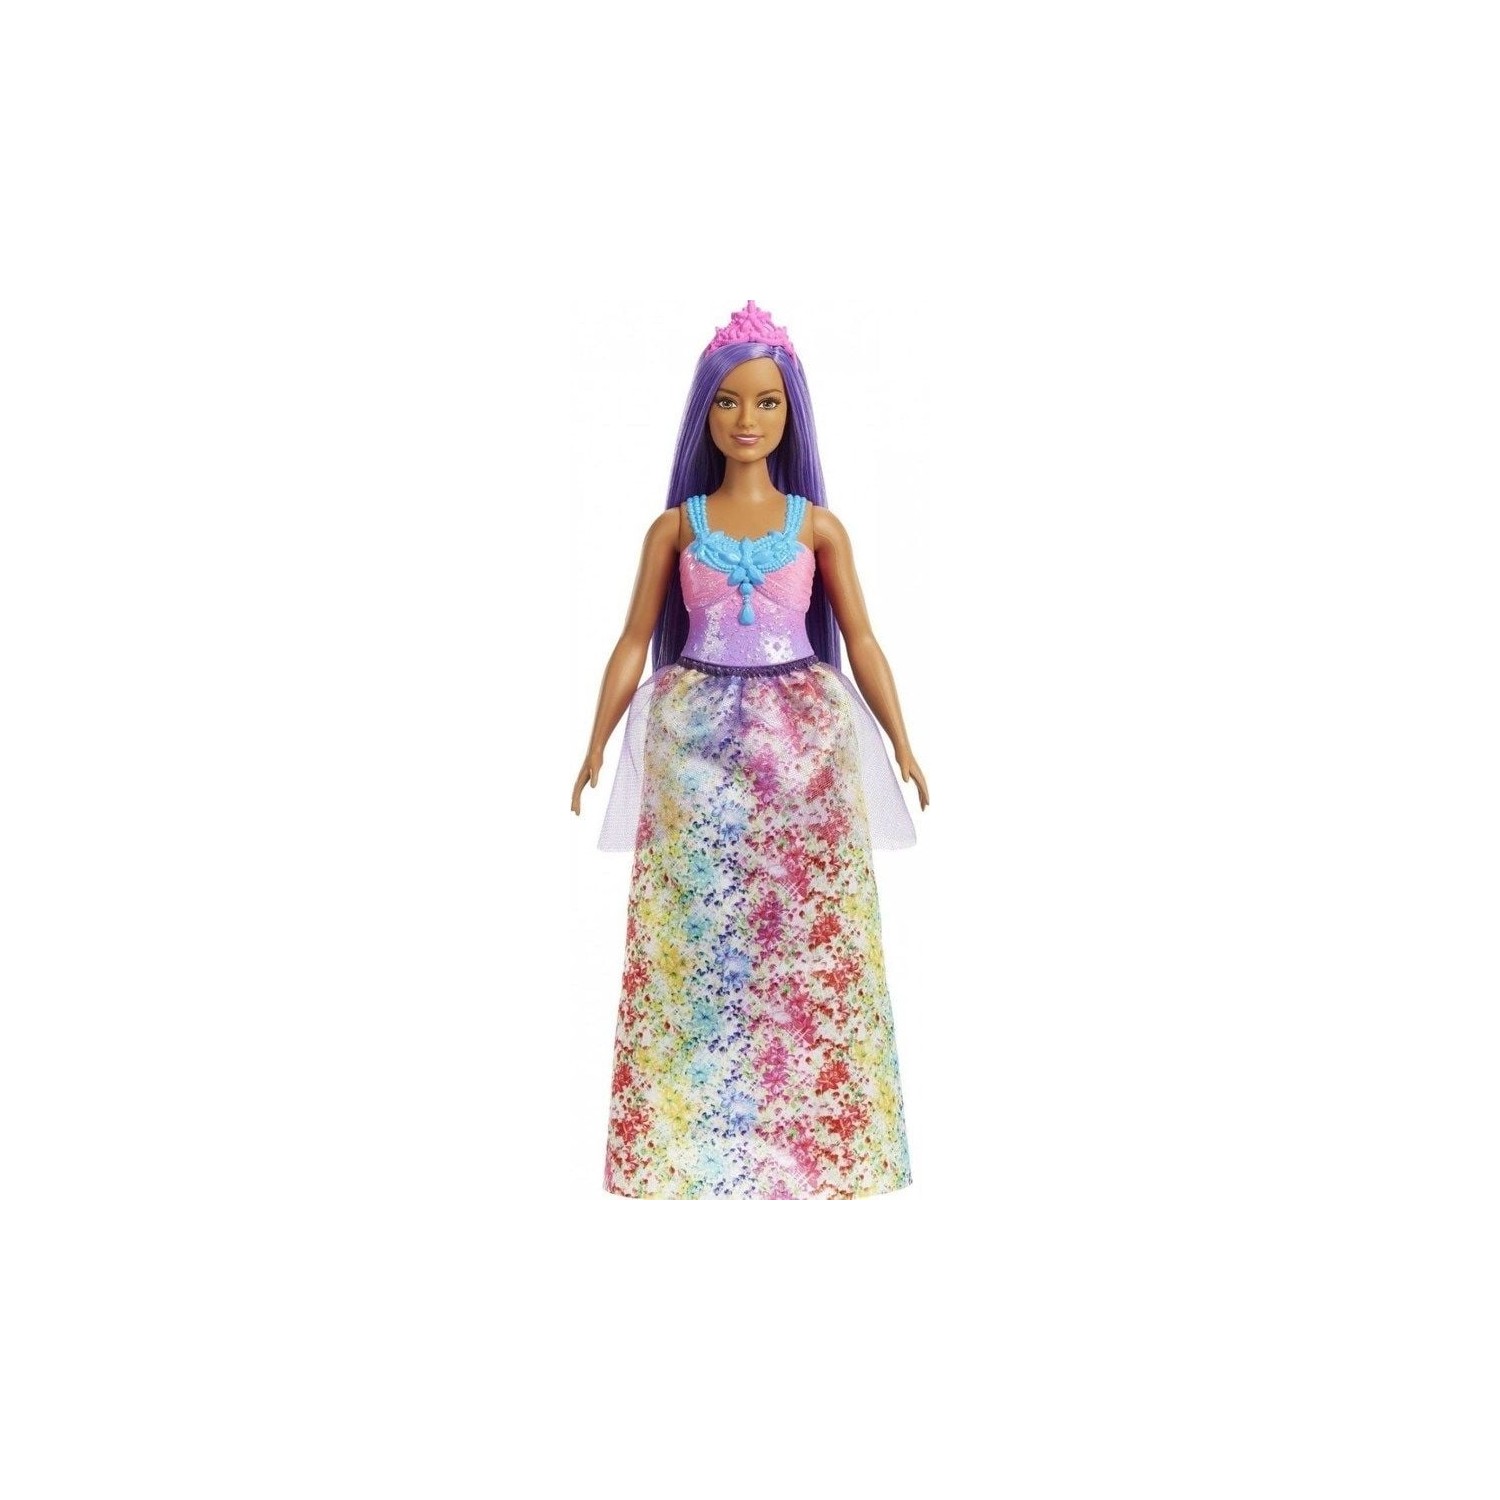 Кукла Barbie Dreamtopia Princess Dolls HGR16 кукла barbie dreamtopia rainbow latiin princess